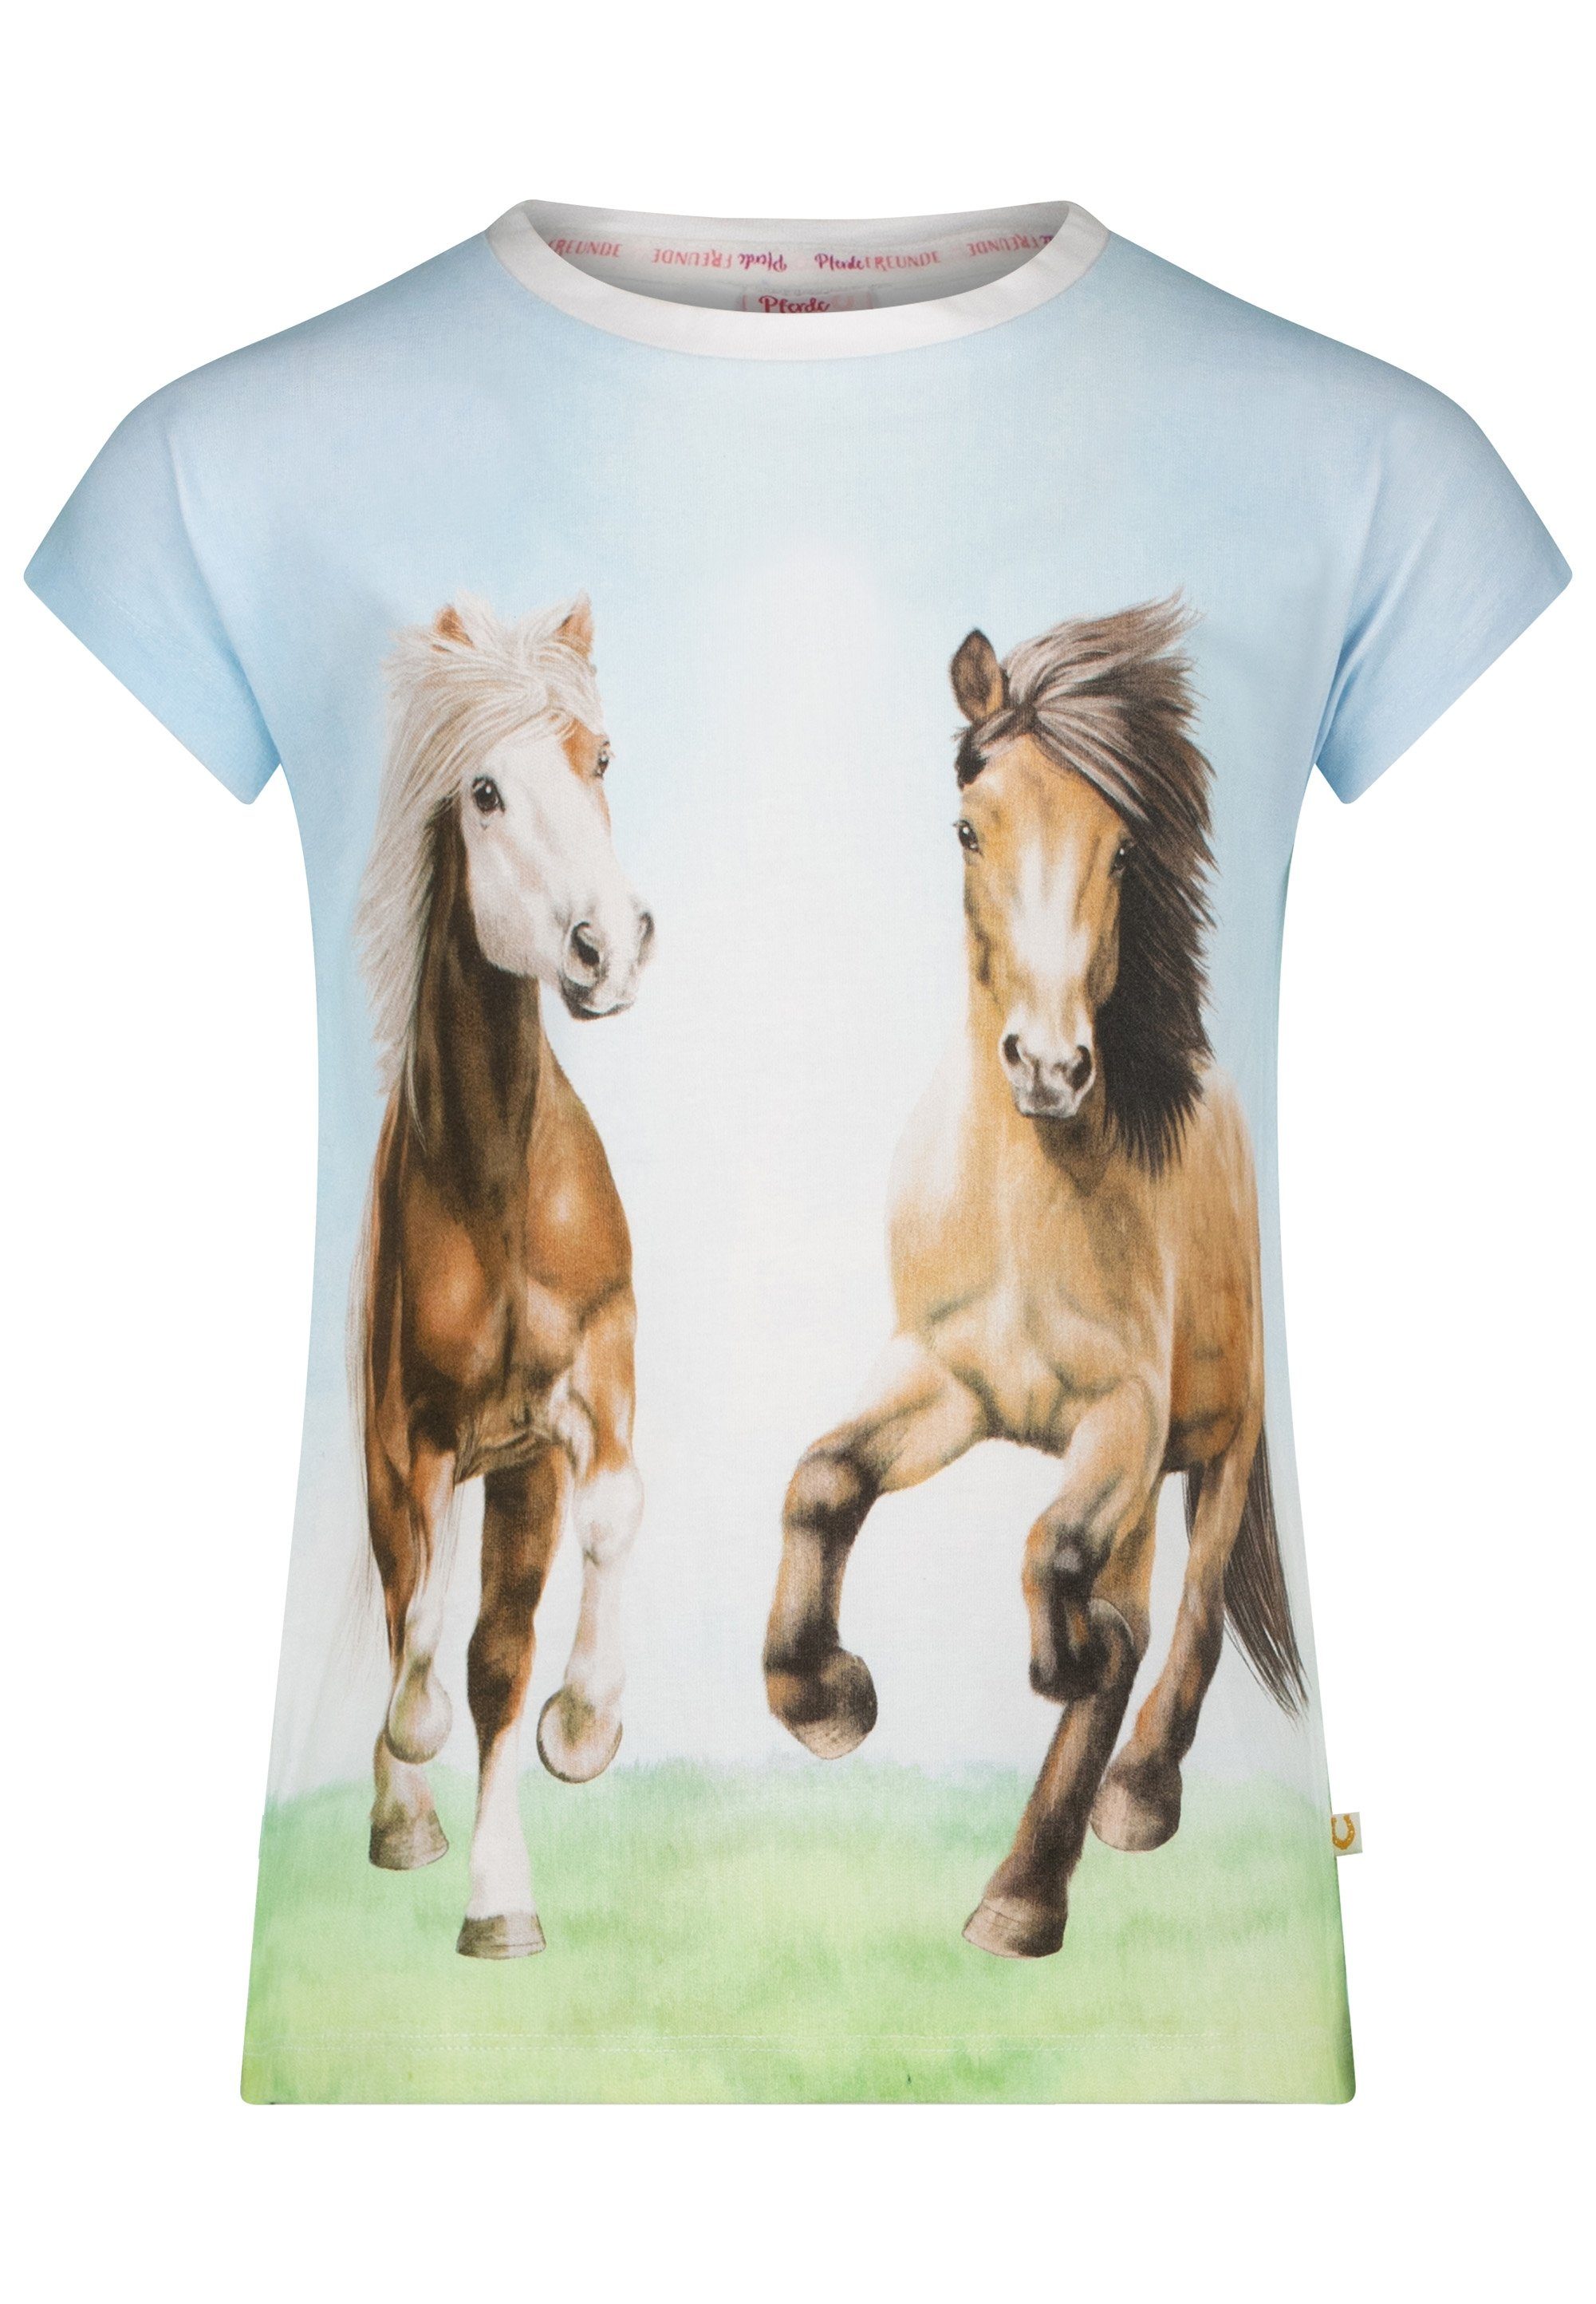 Pferde FREUNDE T-Shirt Pferdefreunde mit Pferdemotiv-Print